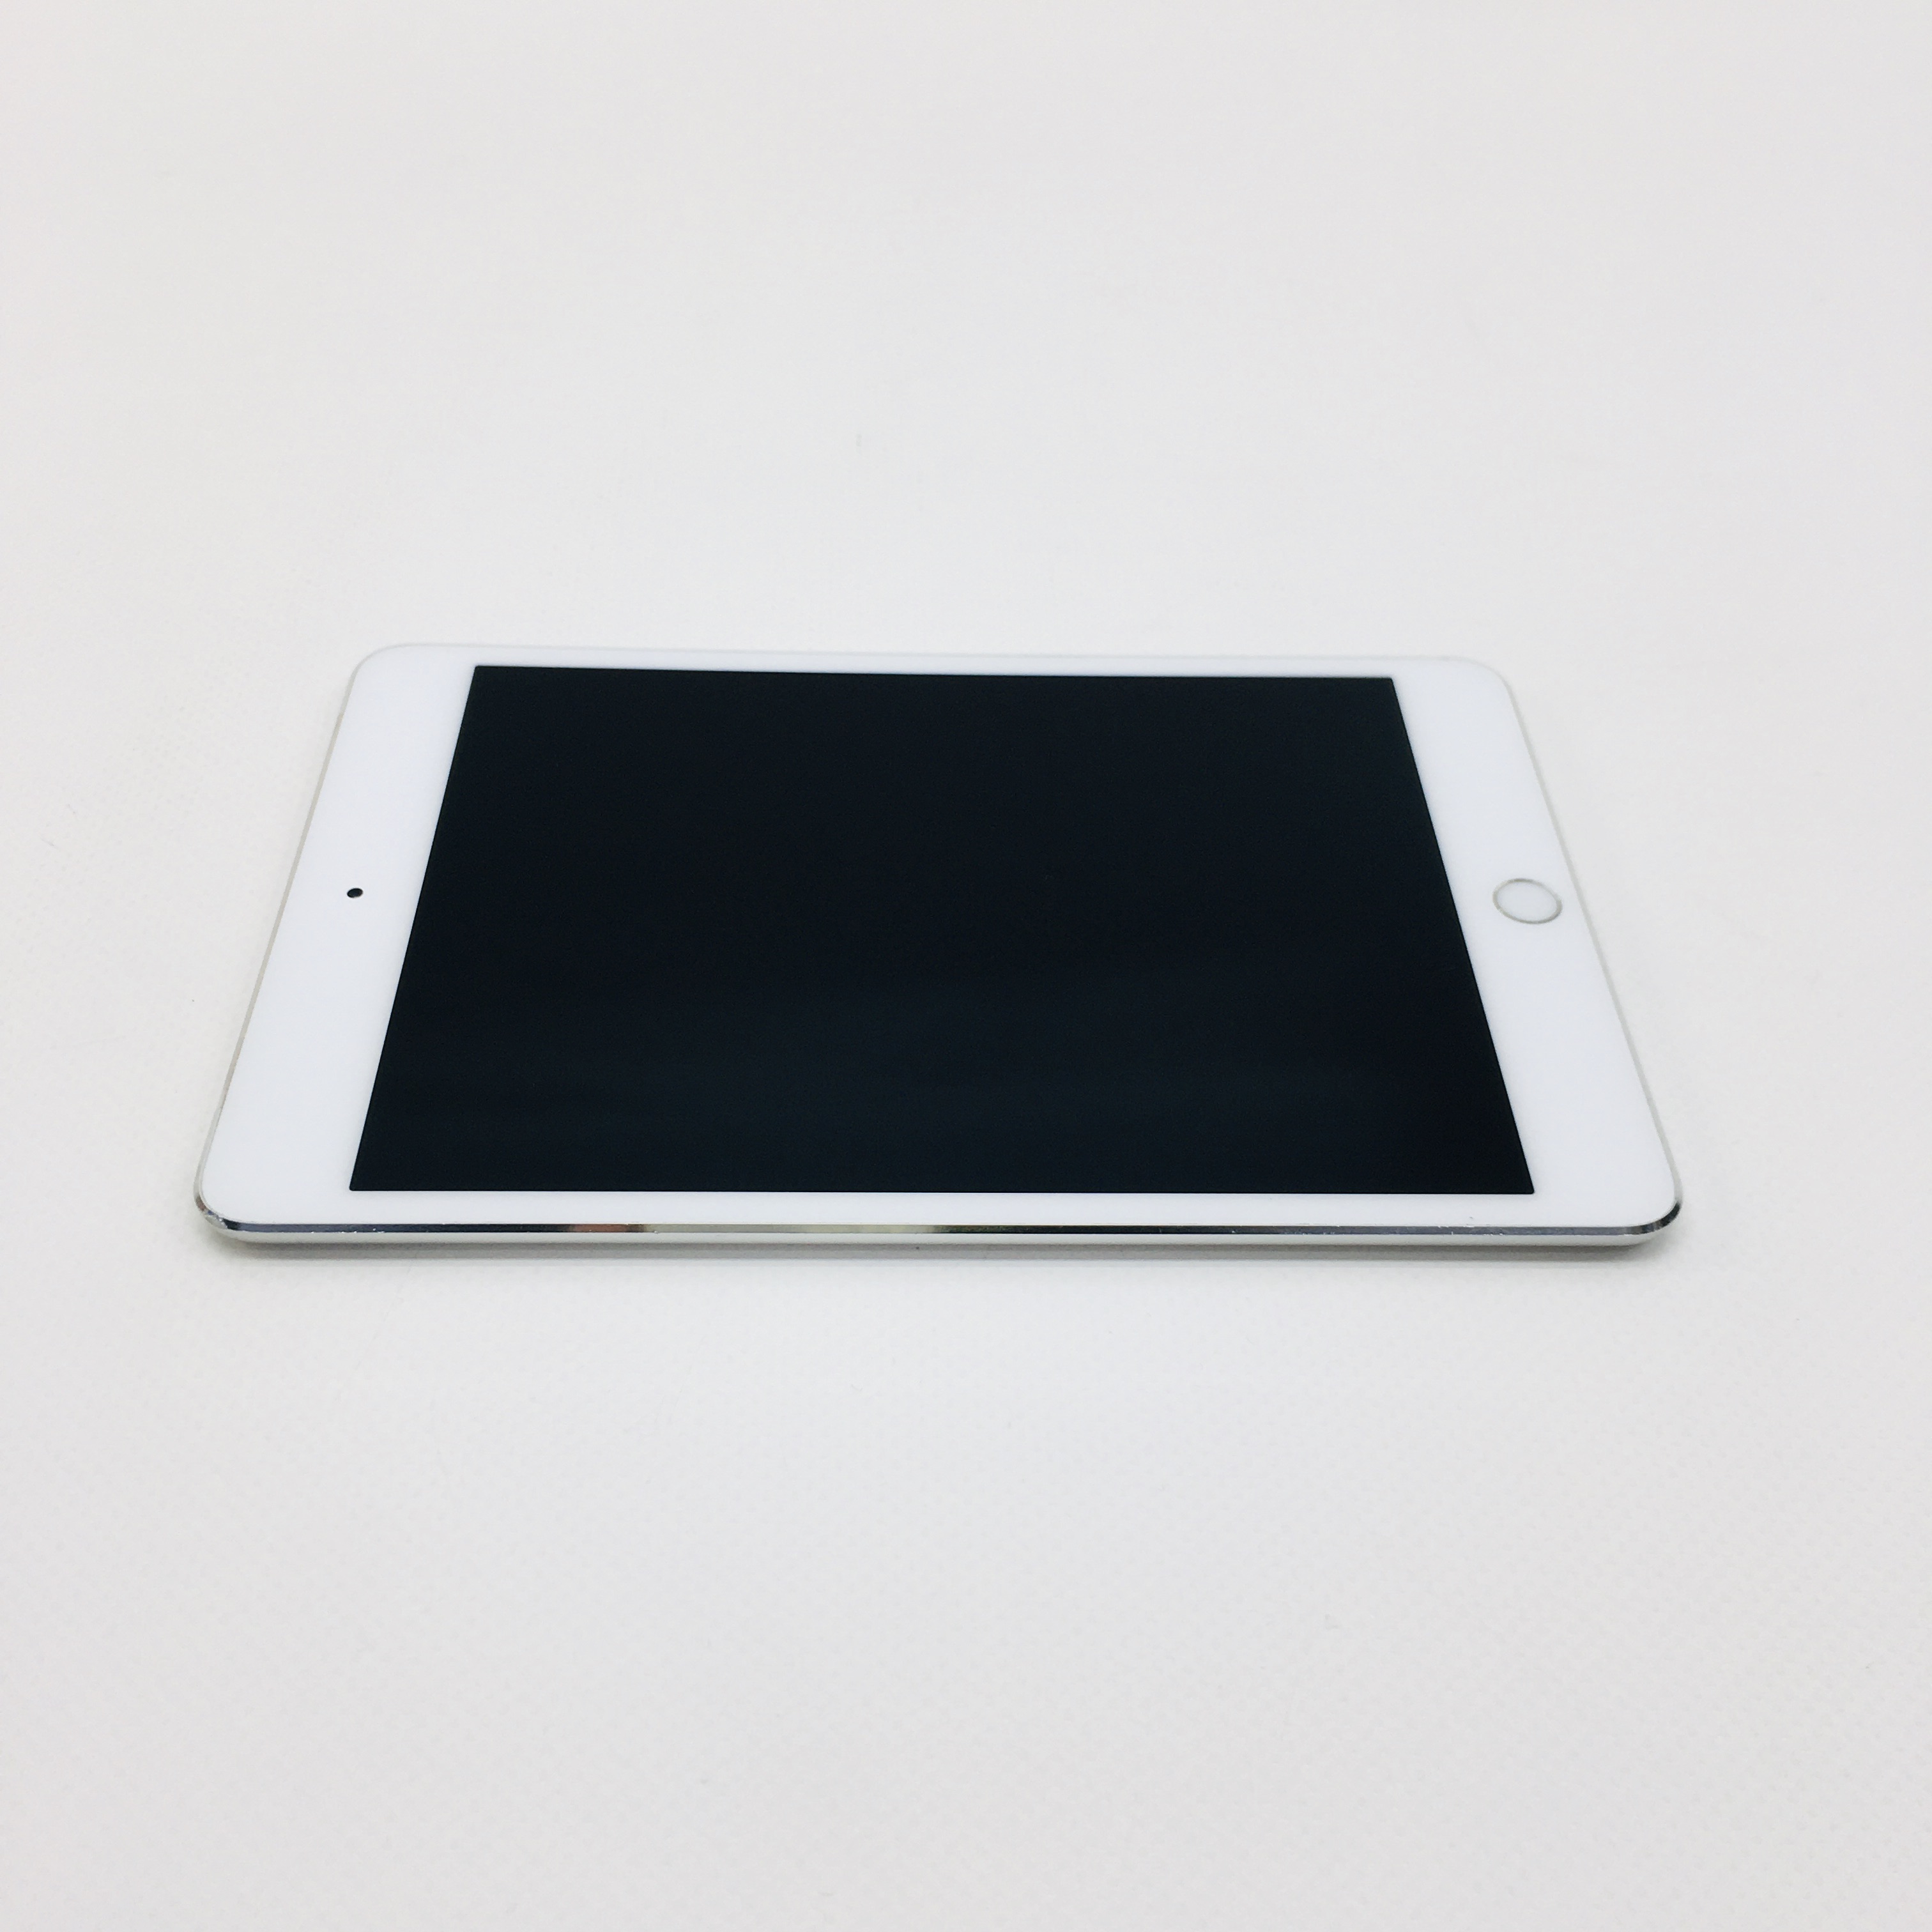 iPad mini 4 Wi-Fi + Cellular 64GB, 64GB, Silver, image 2